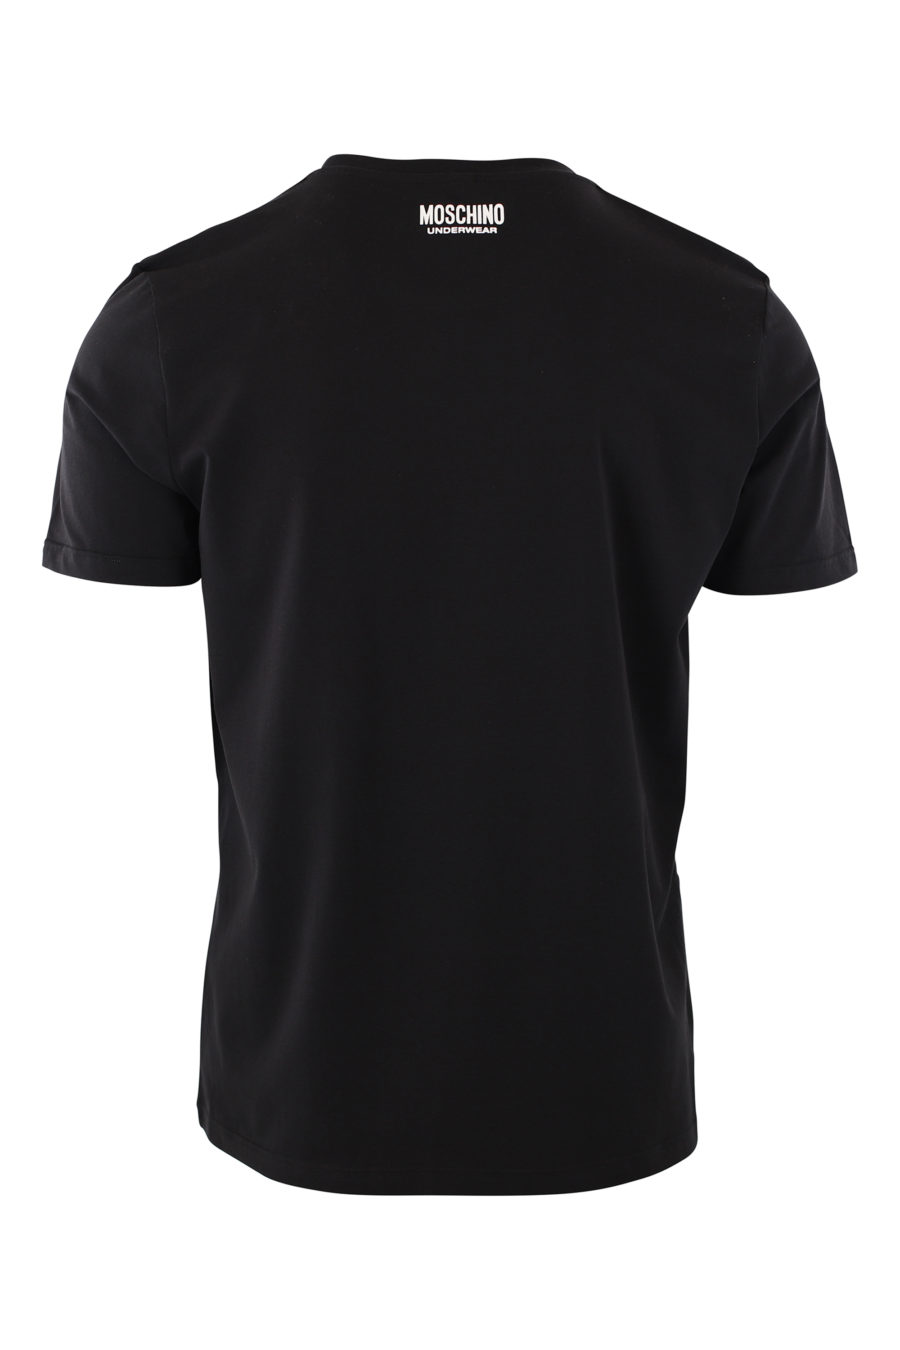 Camiseta negra con logo blanco en cinta en hombros - IMG 2435